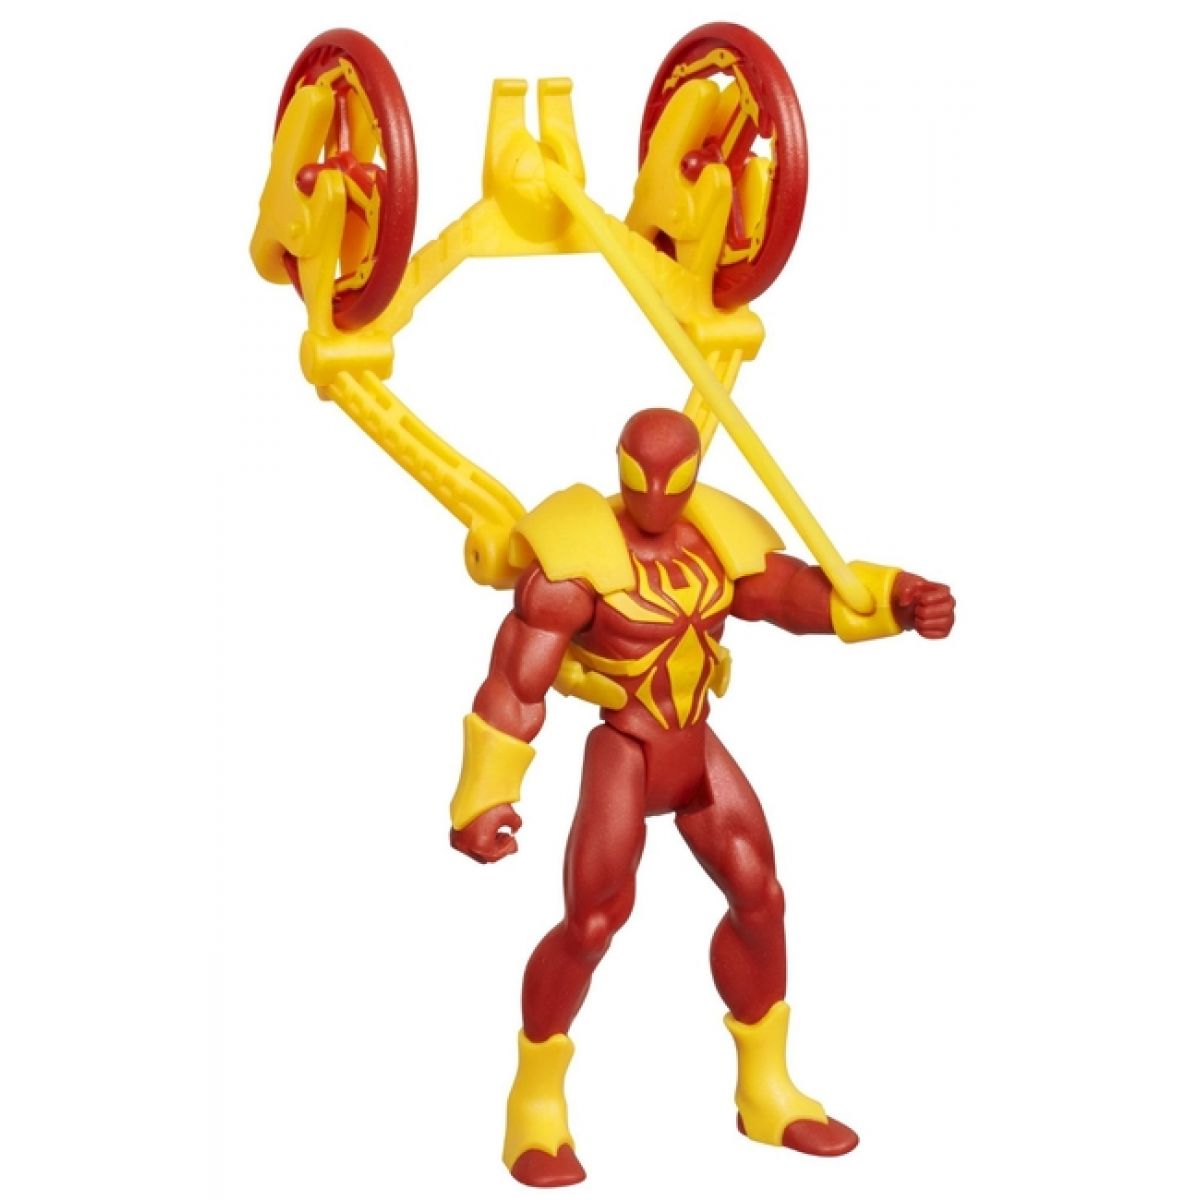 Spiderman Akční vystřelovací figurky Hasbro - Iron Spiderman Catapult Smash